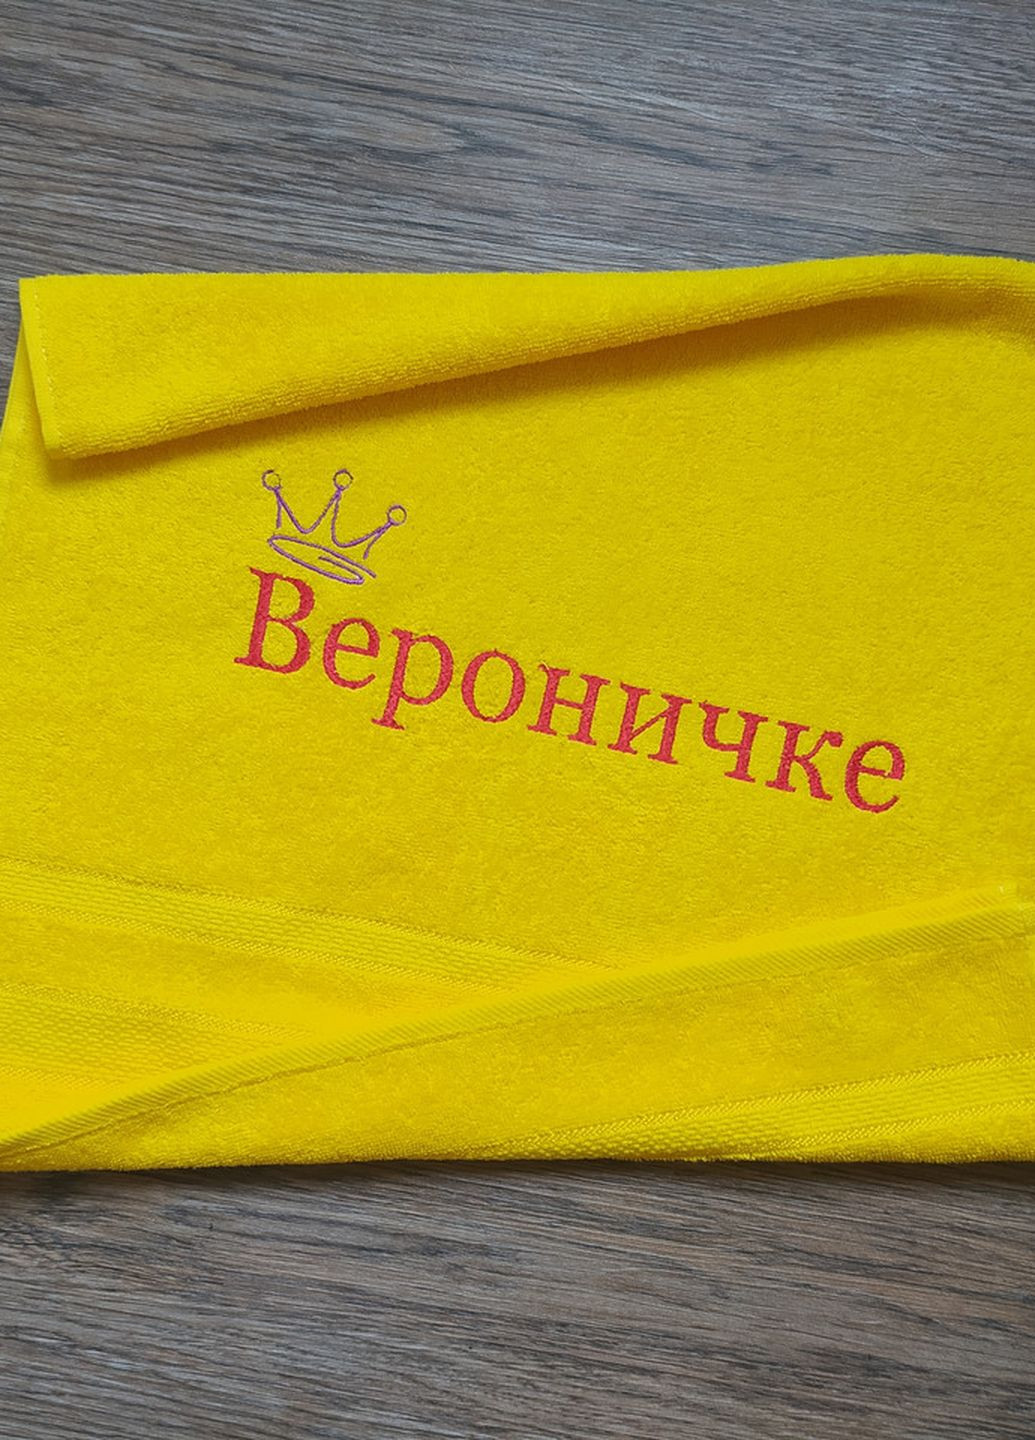 No Brand полотенце с именной вышивкой махровое лицевое 50*90 желтый веронике 00153 однотонный желтый производство - Украина